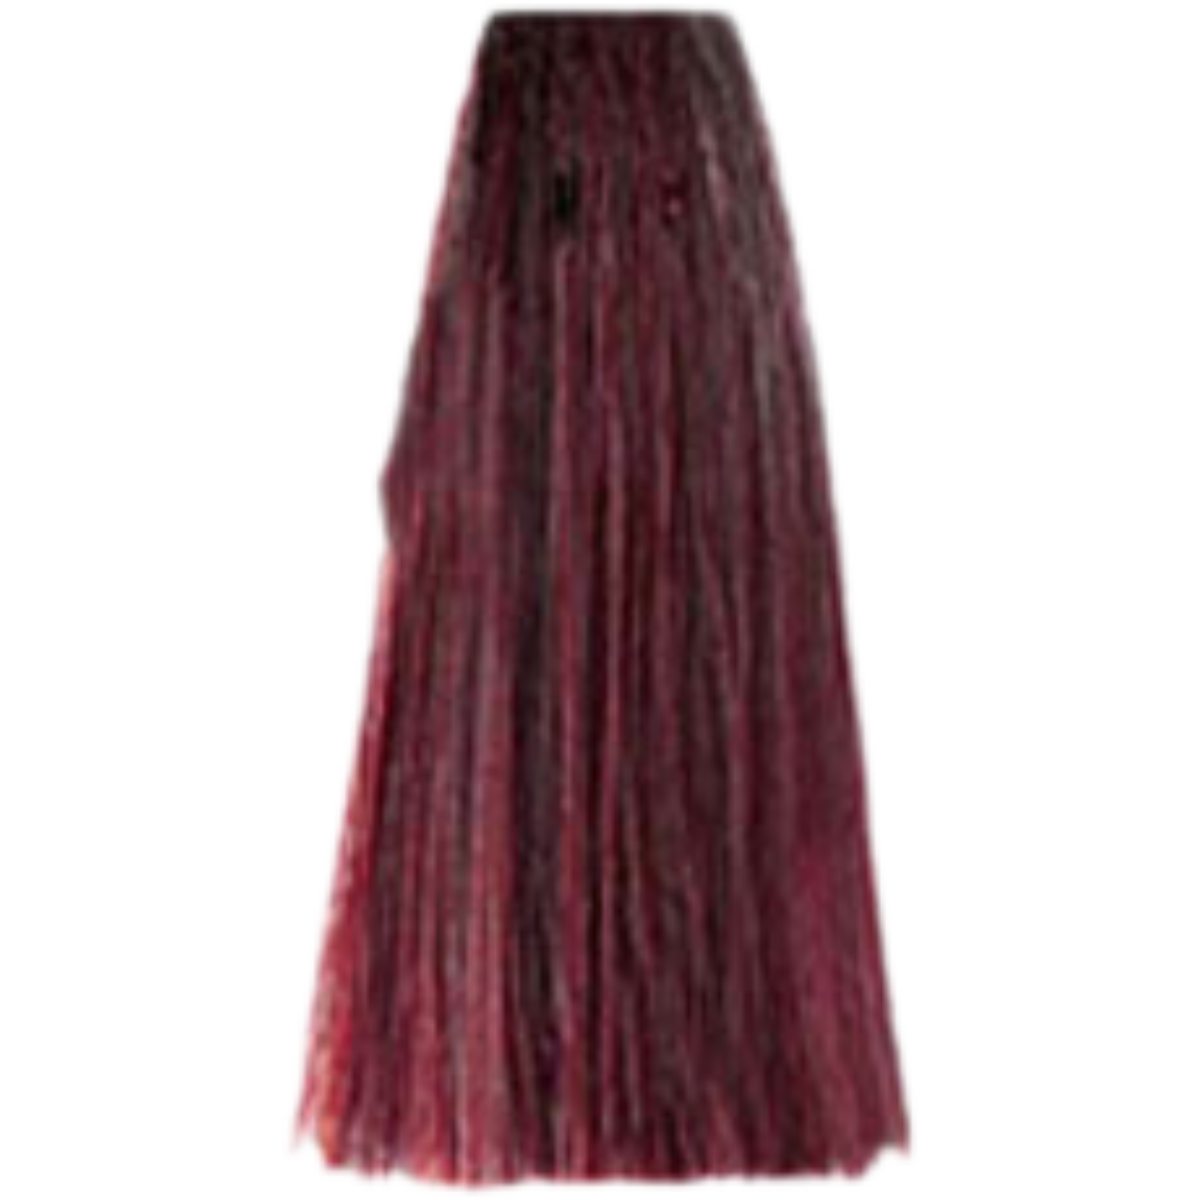 צבע שיער 6.62 DARK RED VIOLET BLONDE פארמויטה FarmaVita צבע לשיער 100 גרם